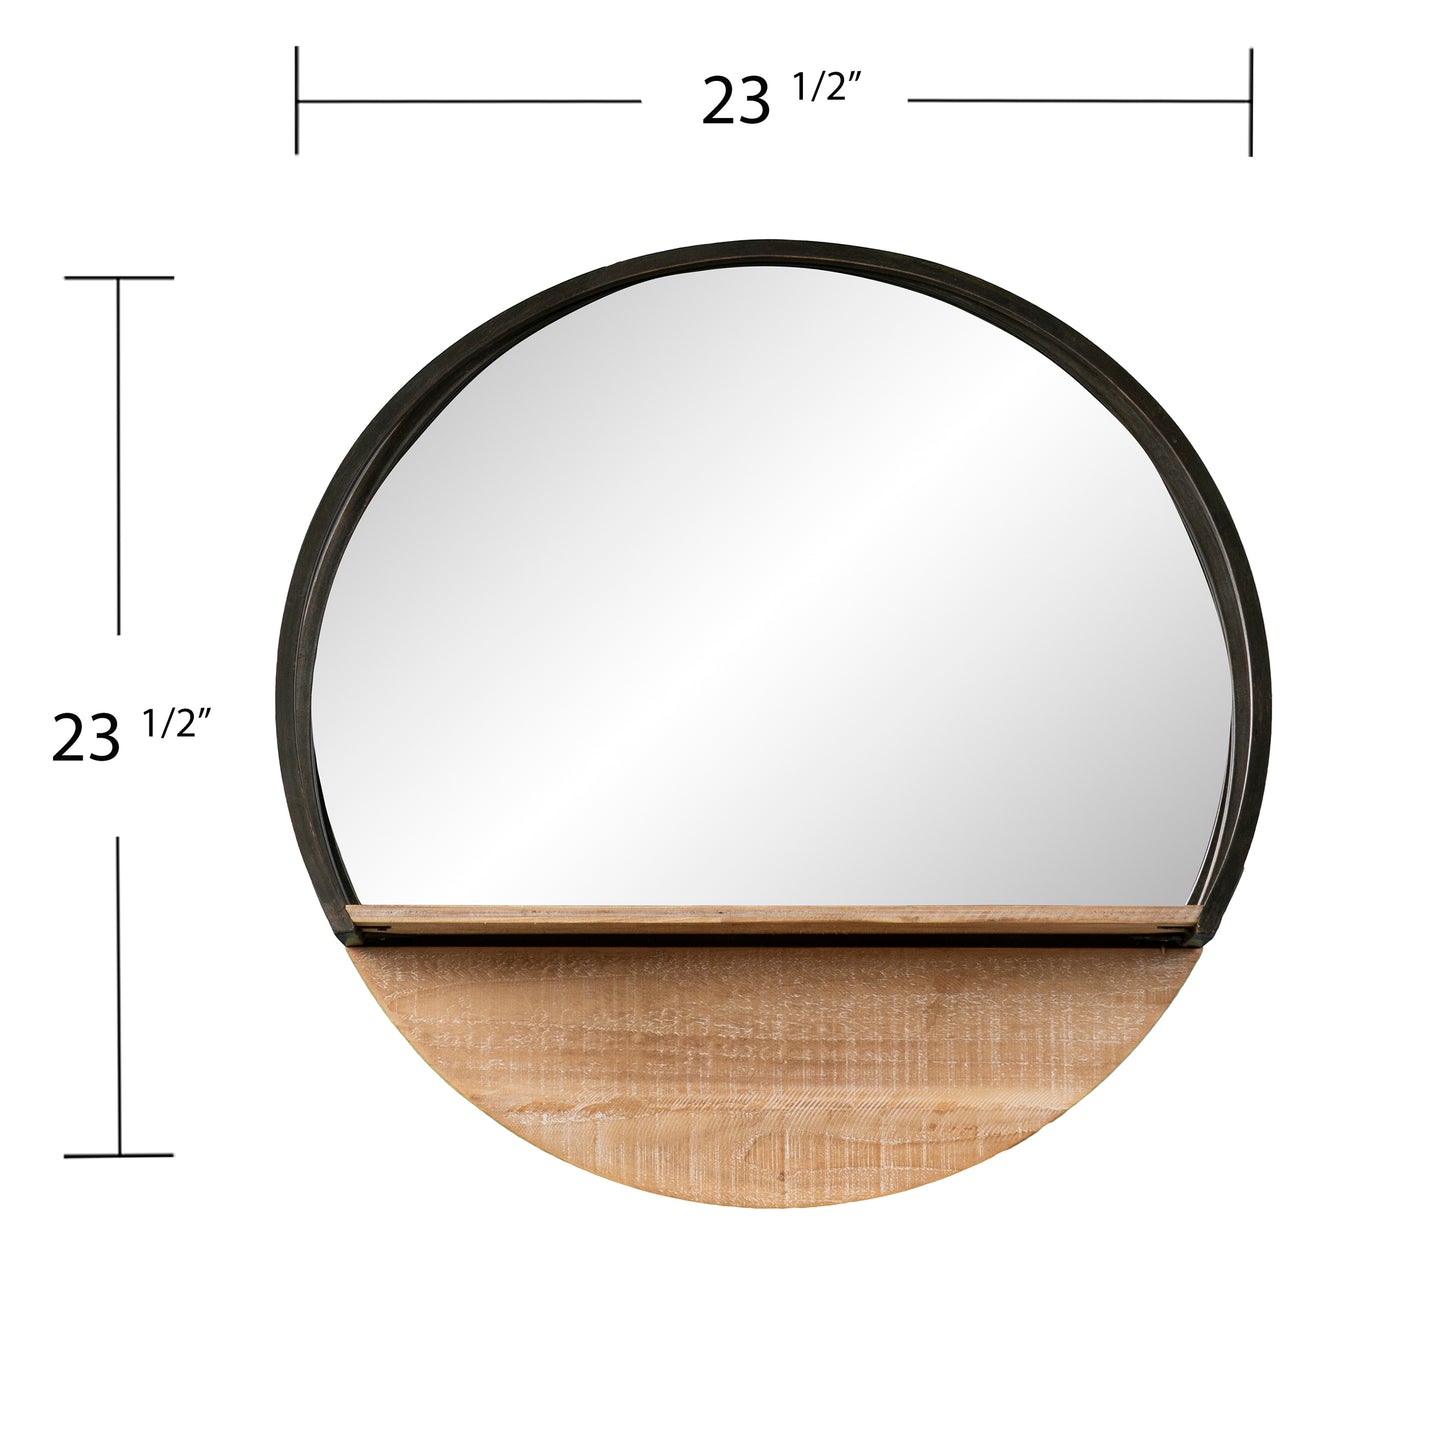 Drelling Round Wall Mirror w/ Shelf